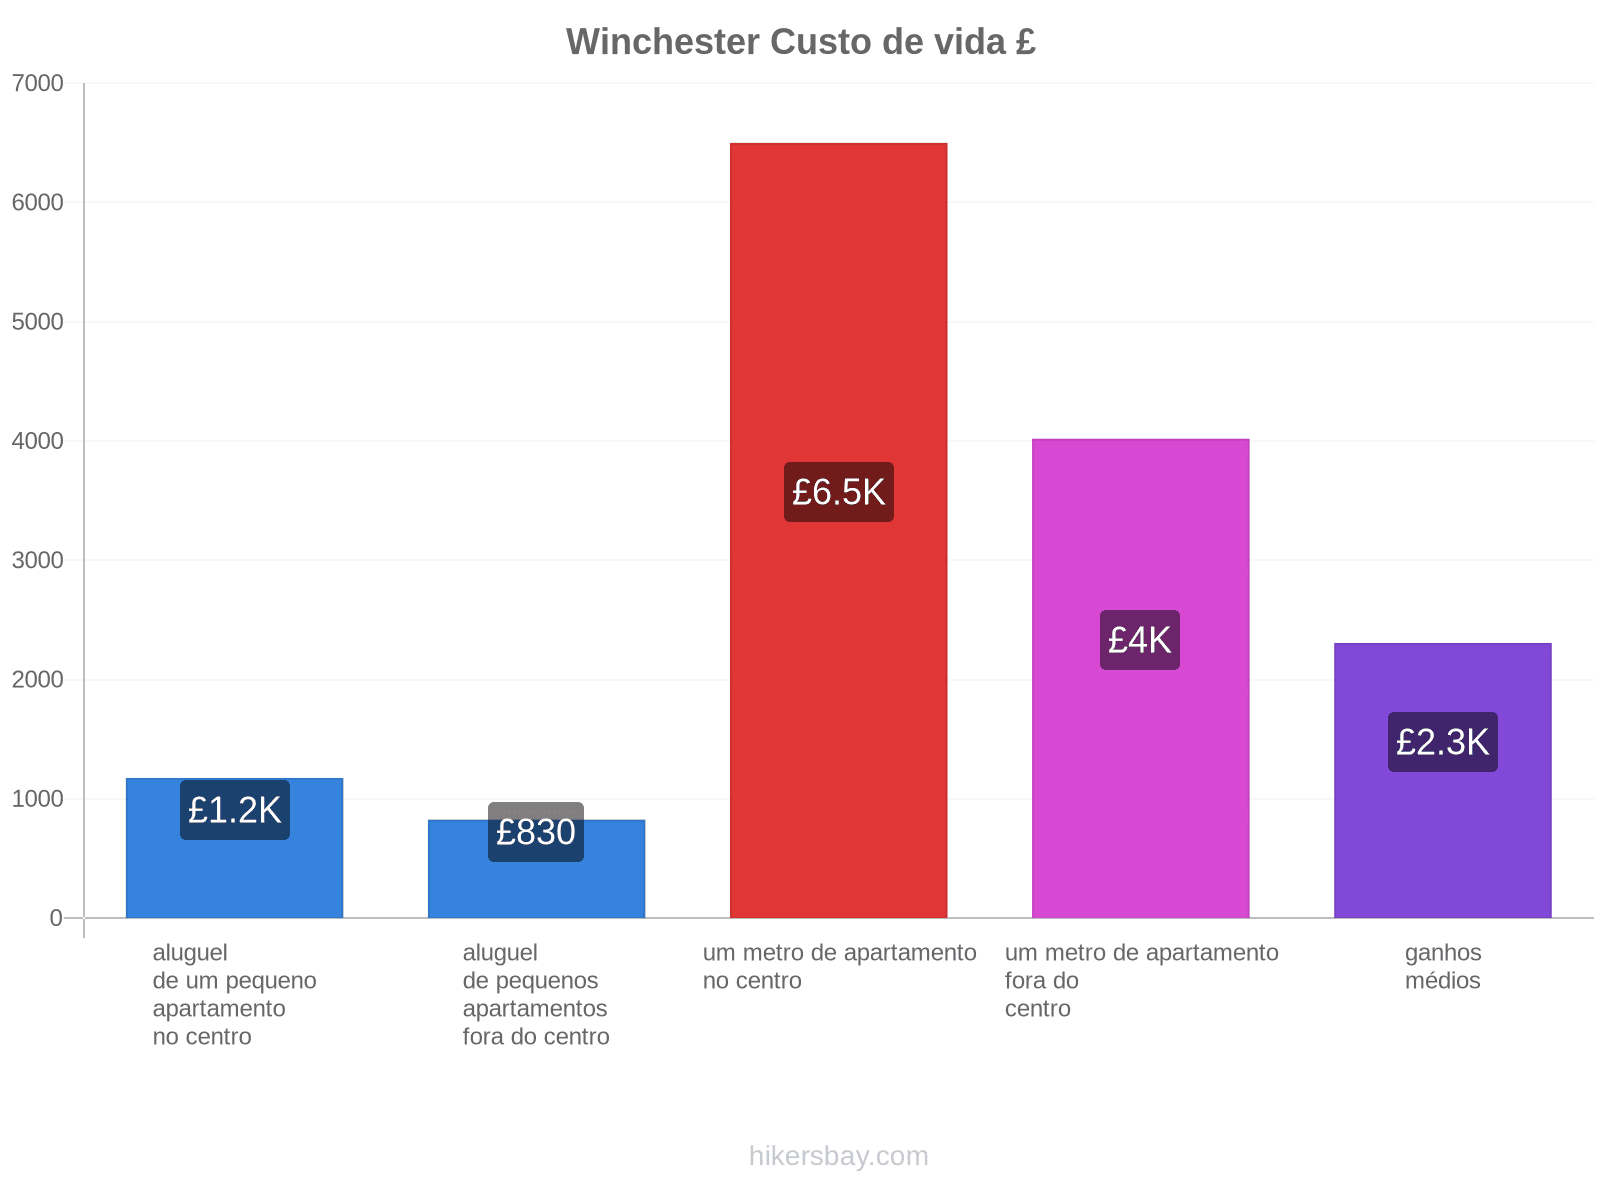 Winchester custo de vida hikersbay.com